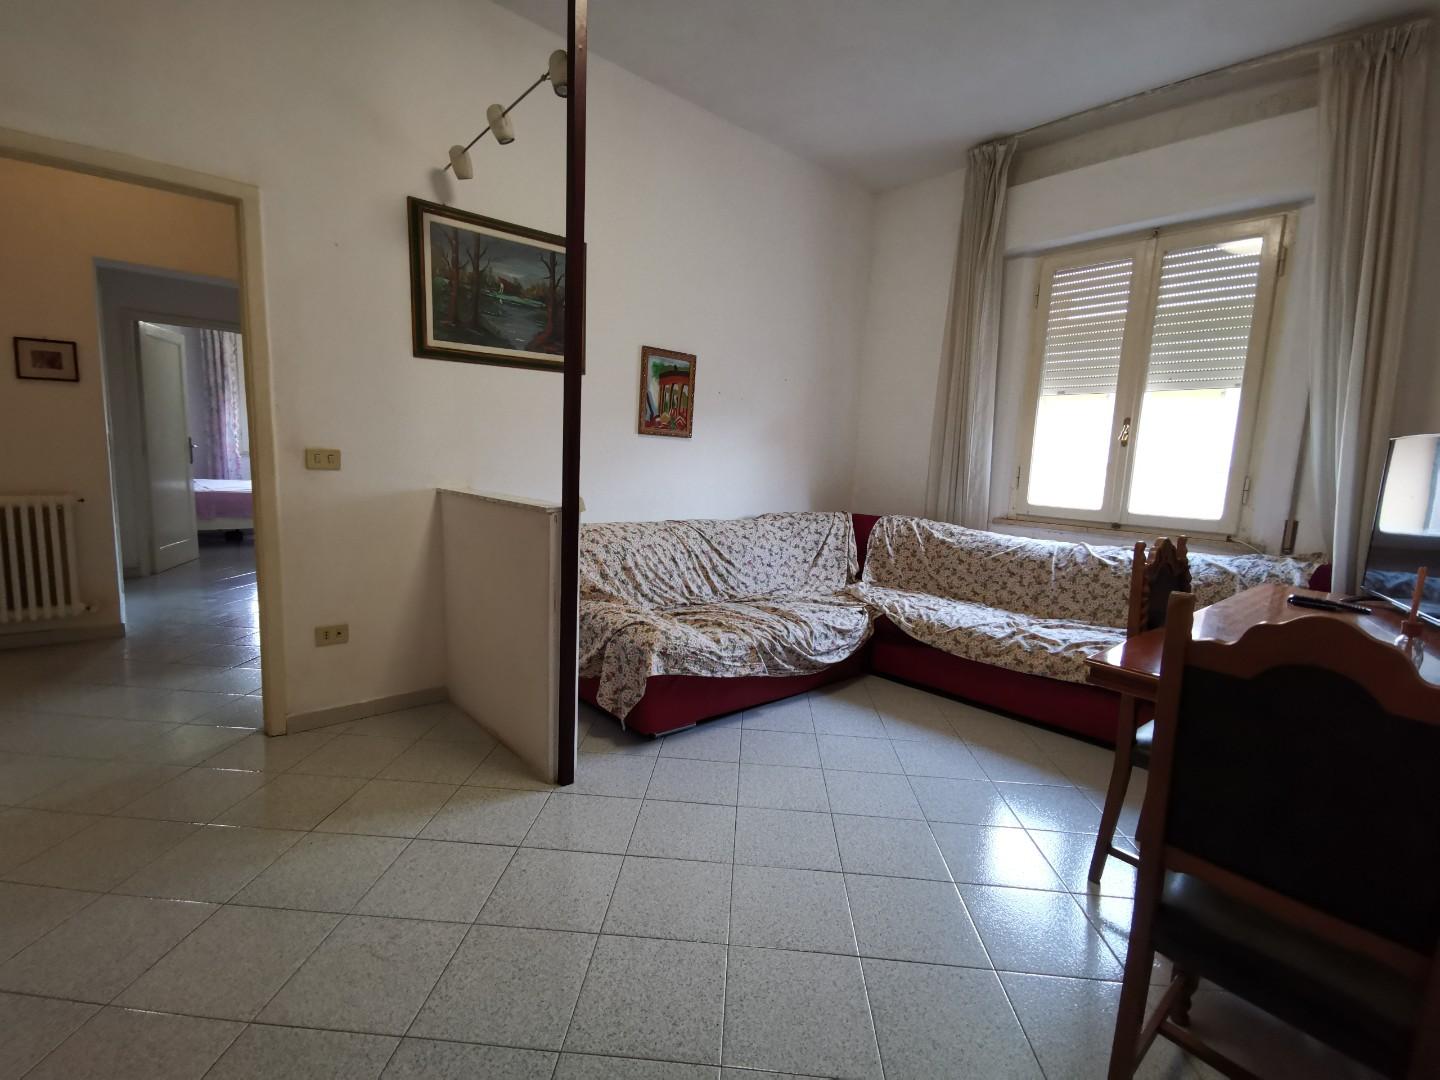 Appartamento in vendita a Santa Croce sull'Arno, 3 locali, prezzo € 68.000 | PortaleAgenzieImmobiliari.it